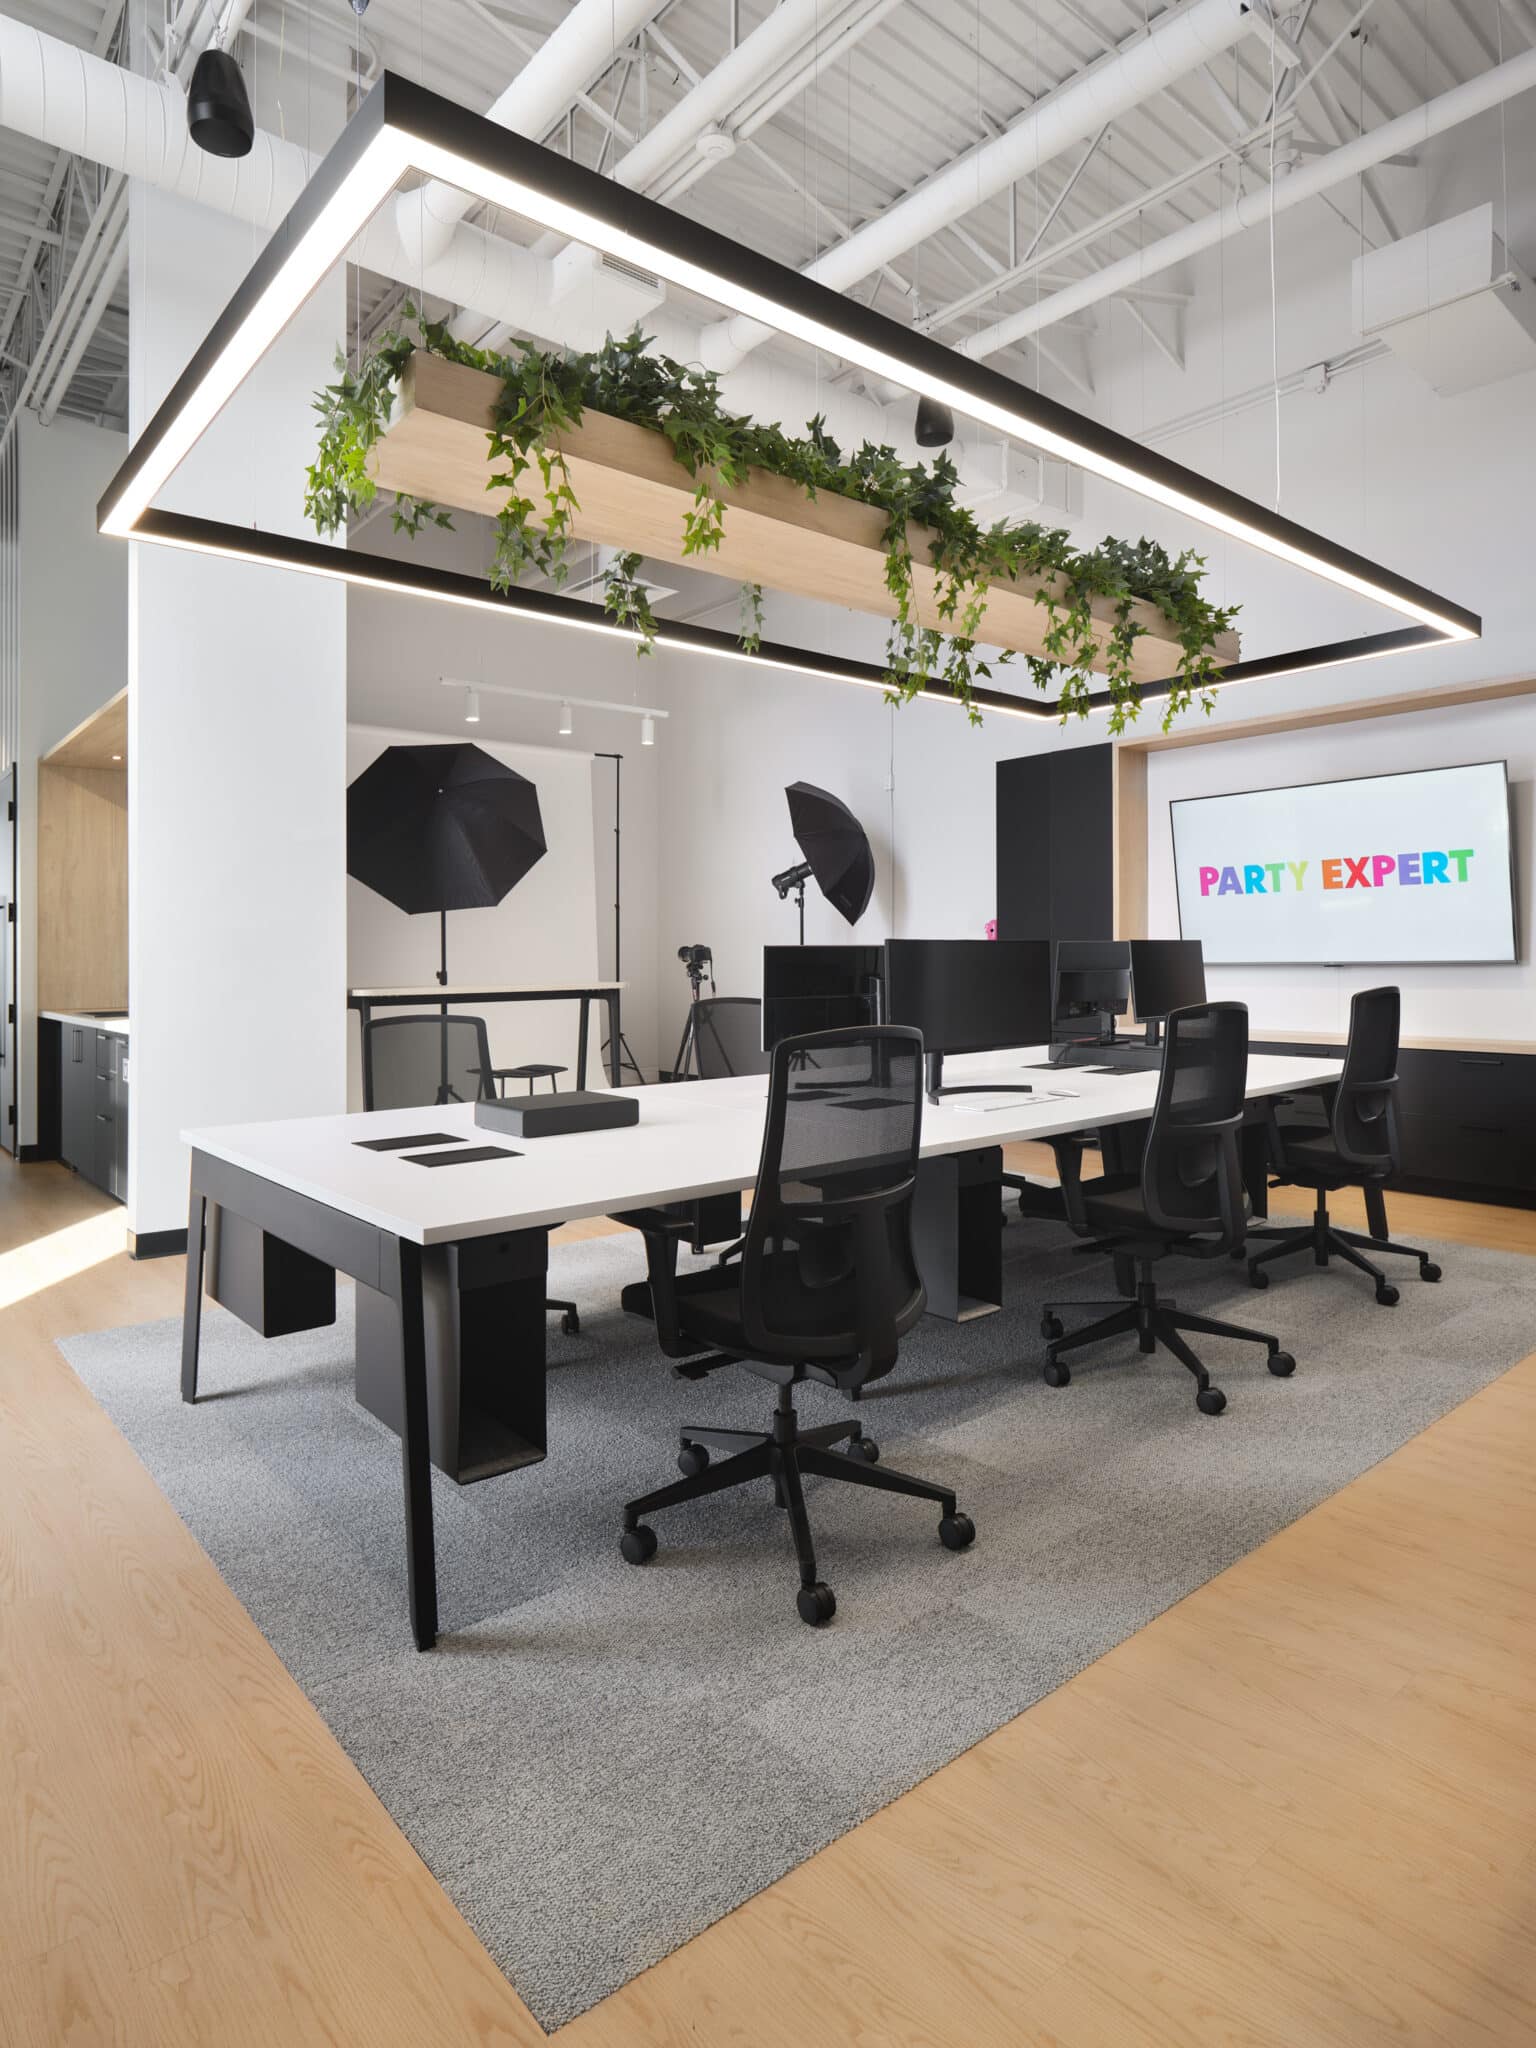 Projet de design corporatif - Espace marketing au nouveau siège social de Groupe Party Expert par VAD Designers d'espaces